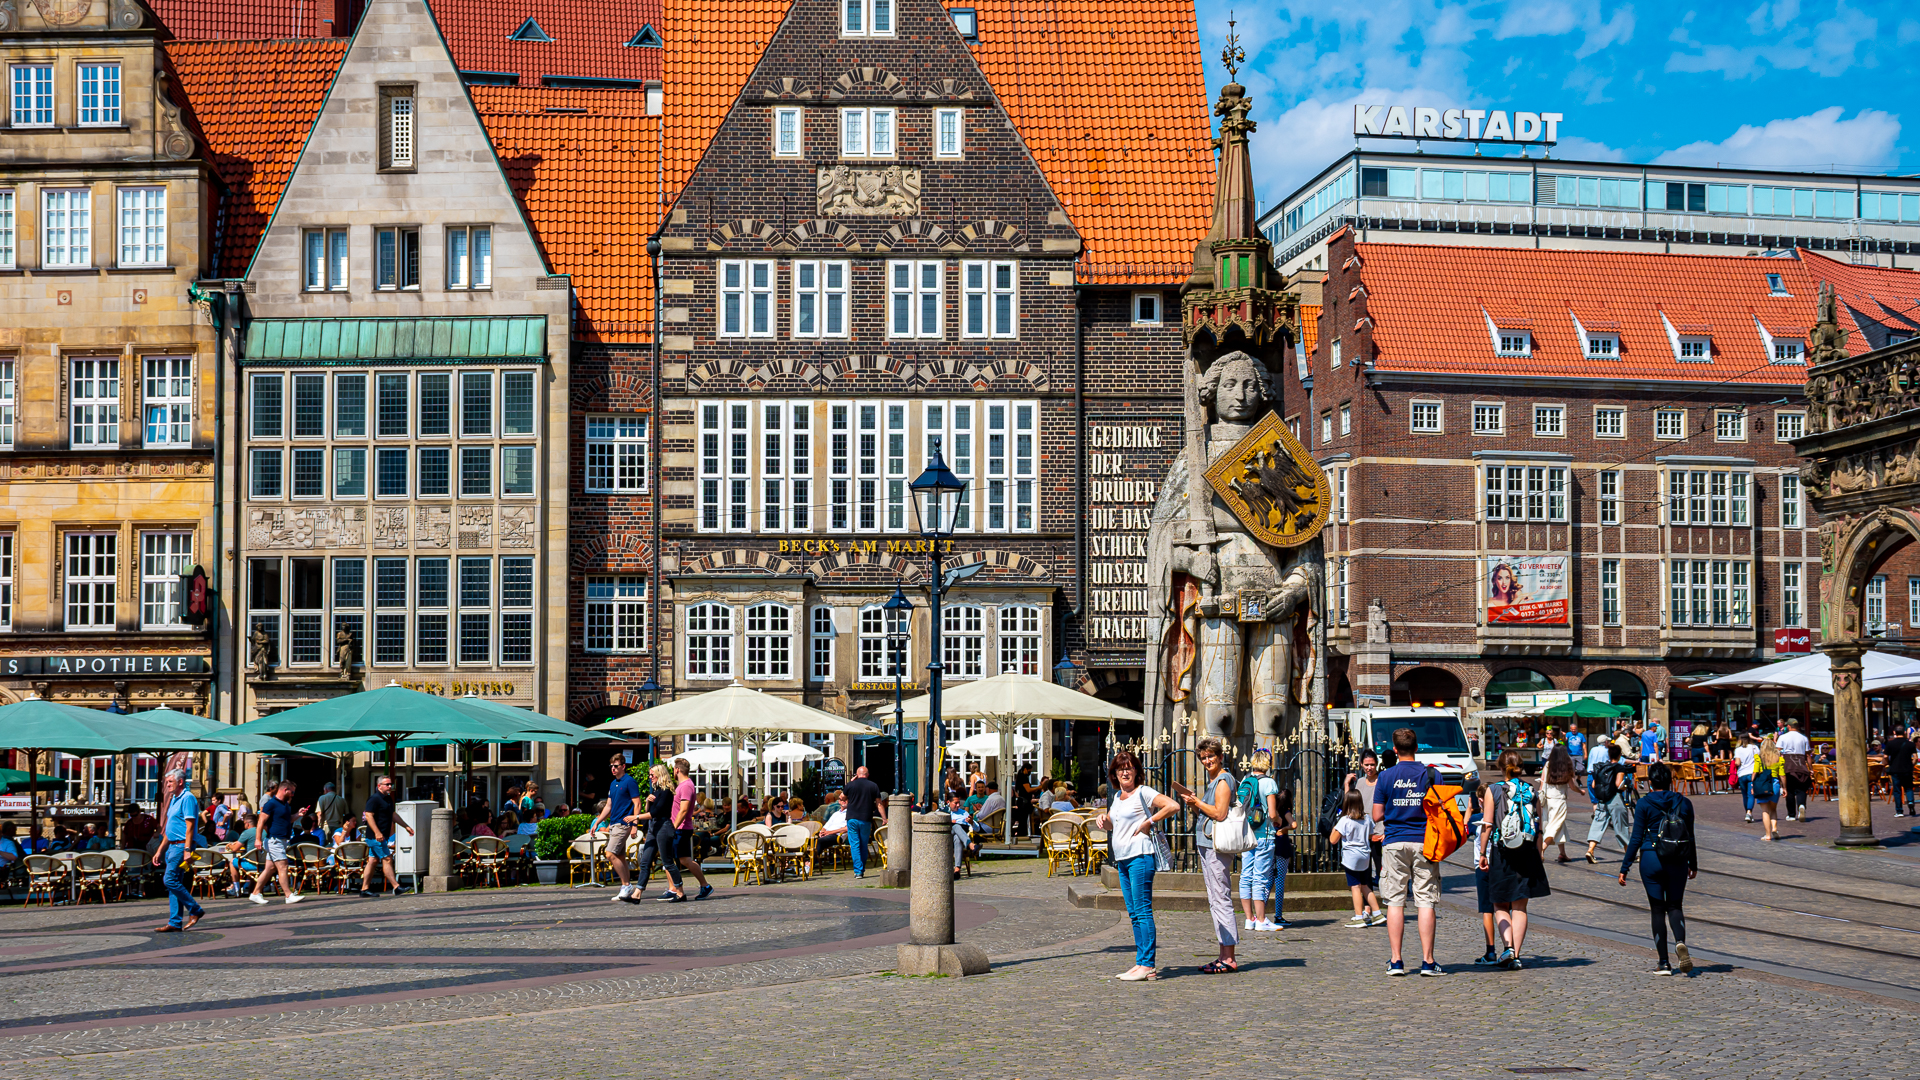 Roland Statue and Marktplatz